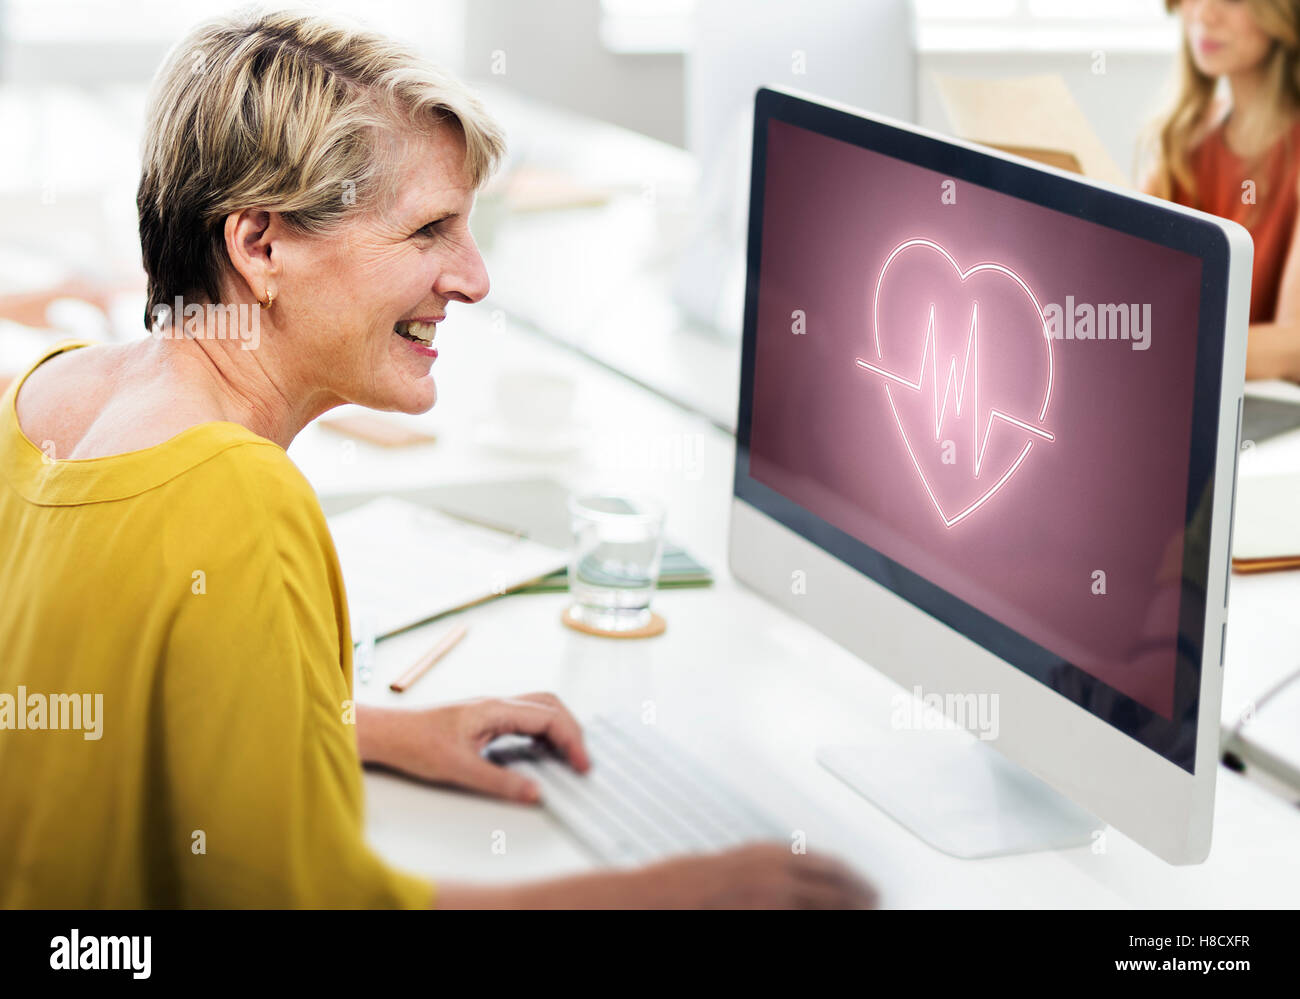 Cardiache malattia cardiovascolare cuore concetto grafico Foto Stock